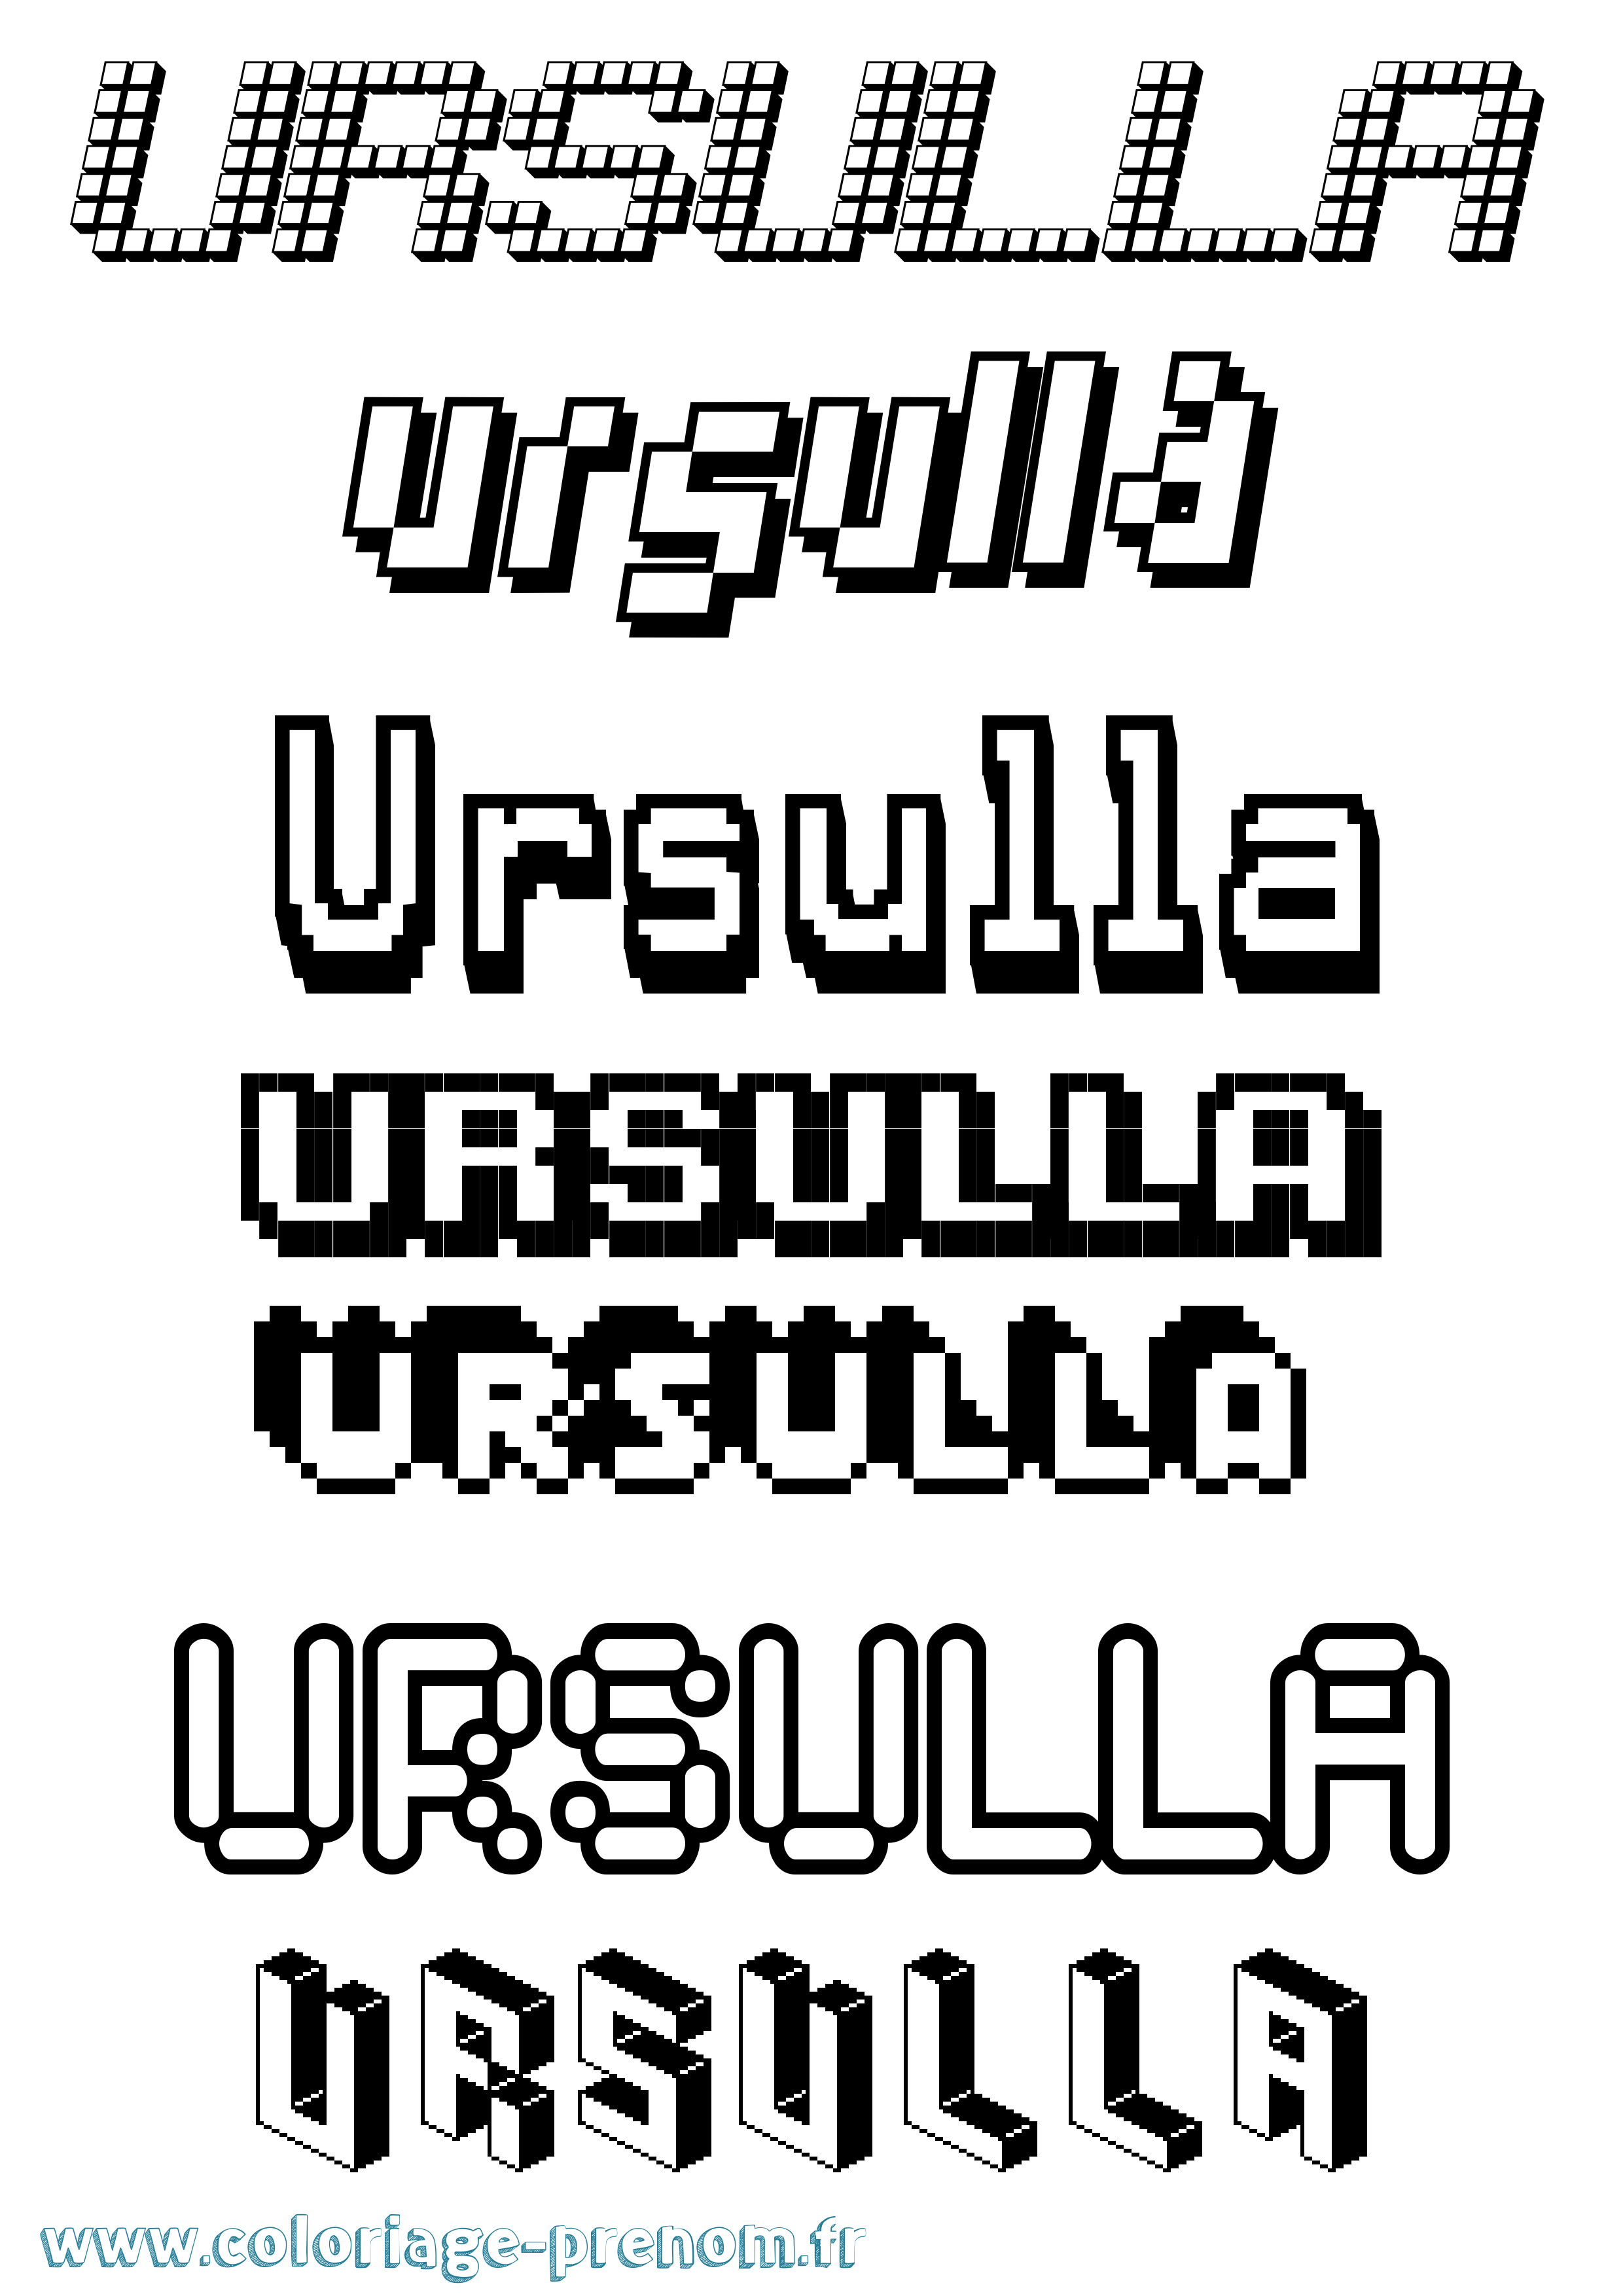 Coloriage prénom Ursulla Pixel